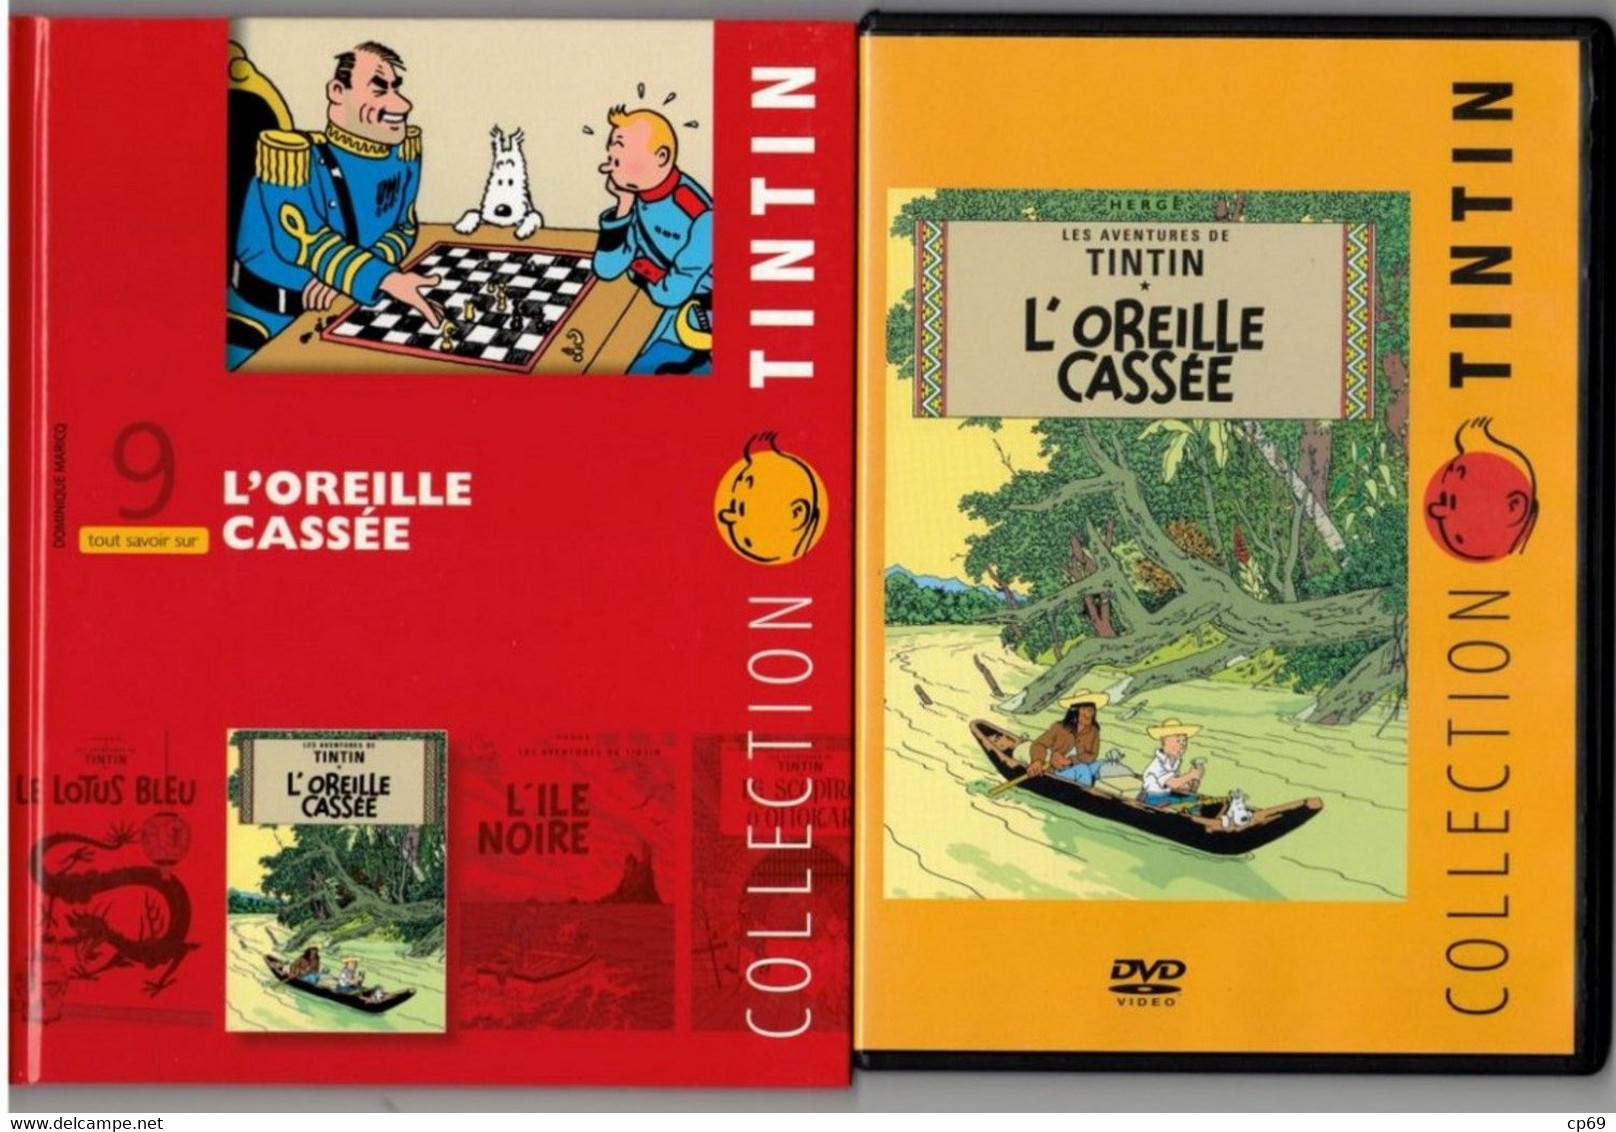 Tintin Hergé / Moulinsart 2010 Milou Chien Dog Cane L'Oreille Cassée N°9 DVD + Livret Explicatif En B.Etat - Animation